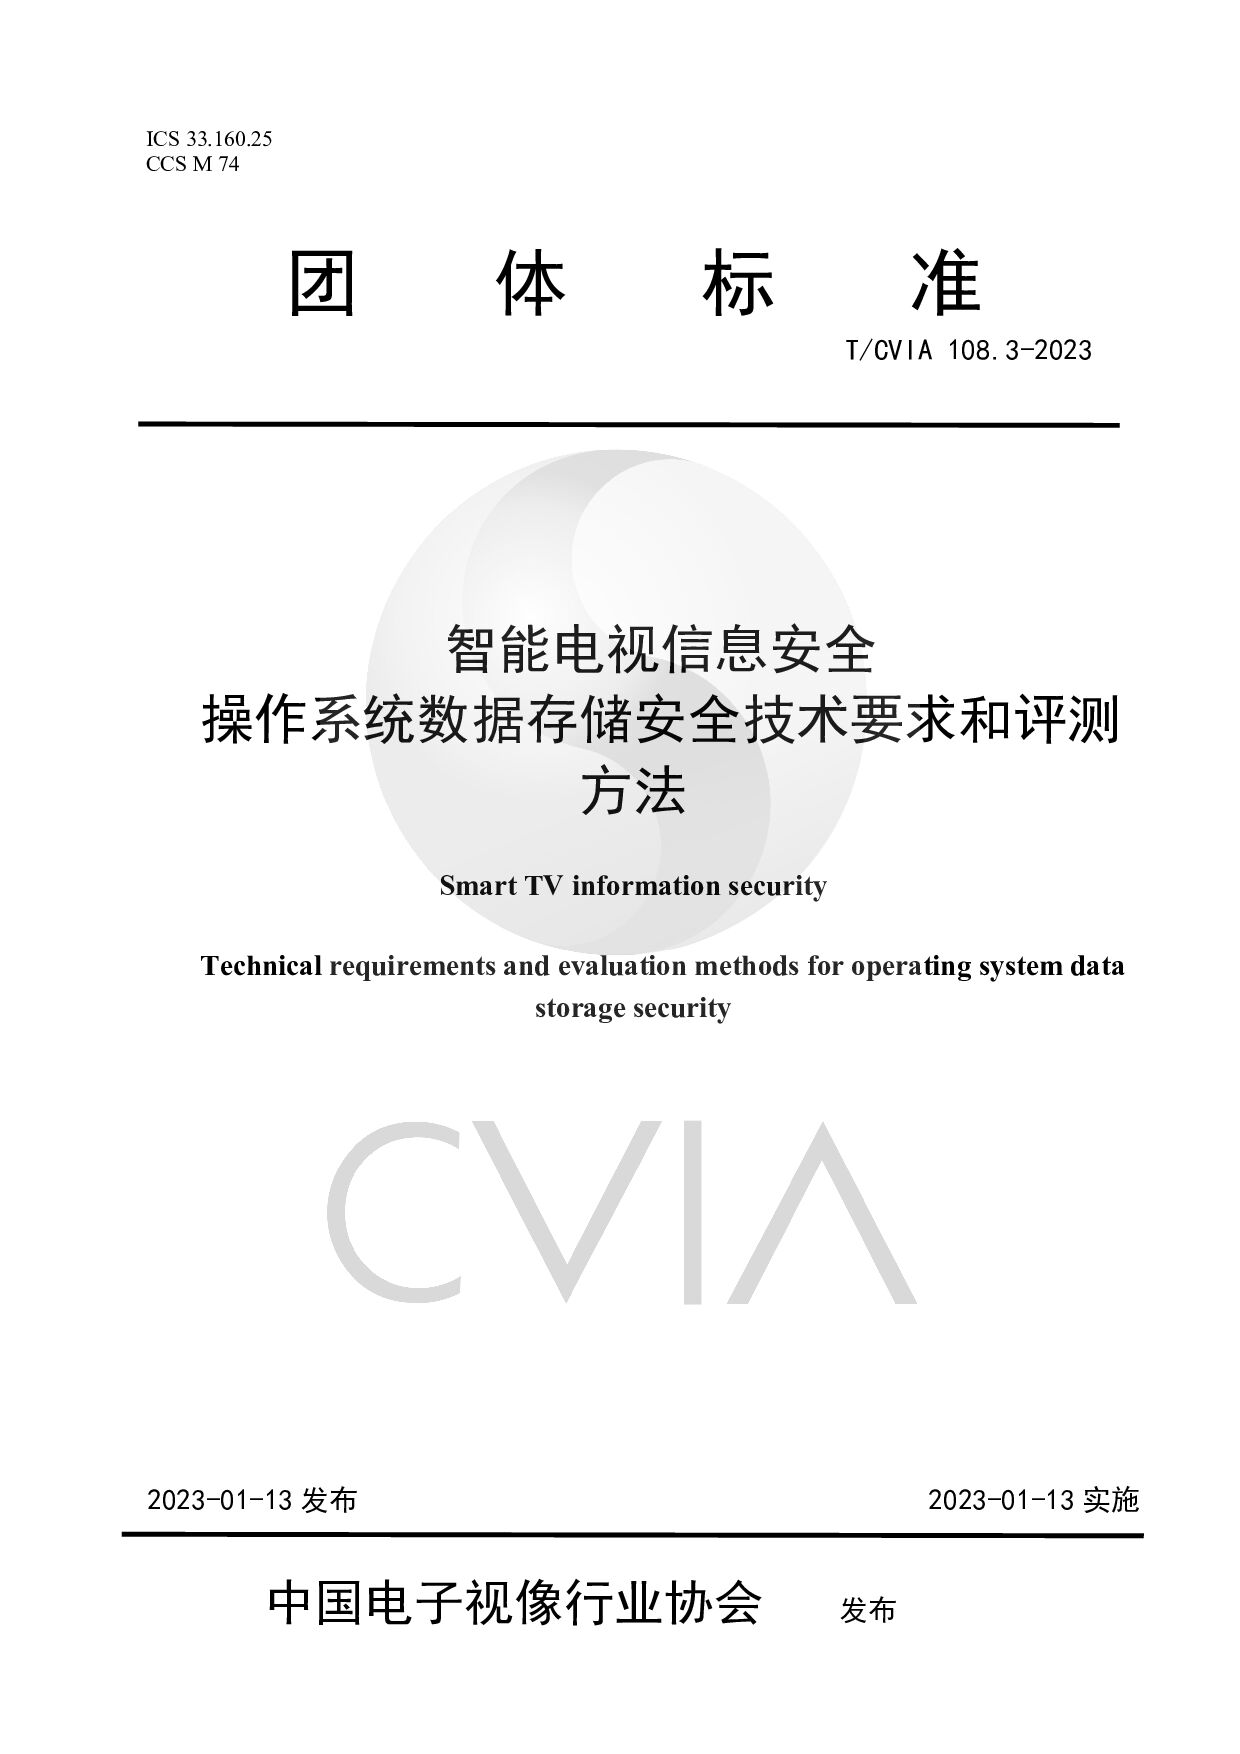 T/CVIA 108.3-2023封面图